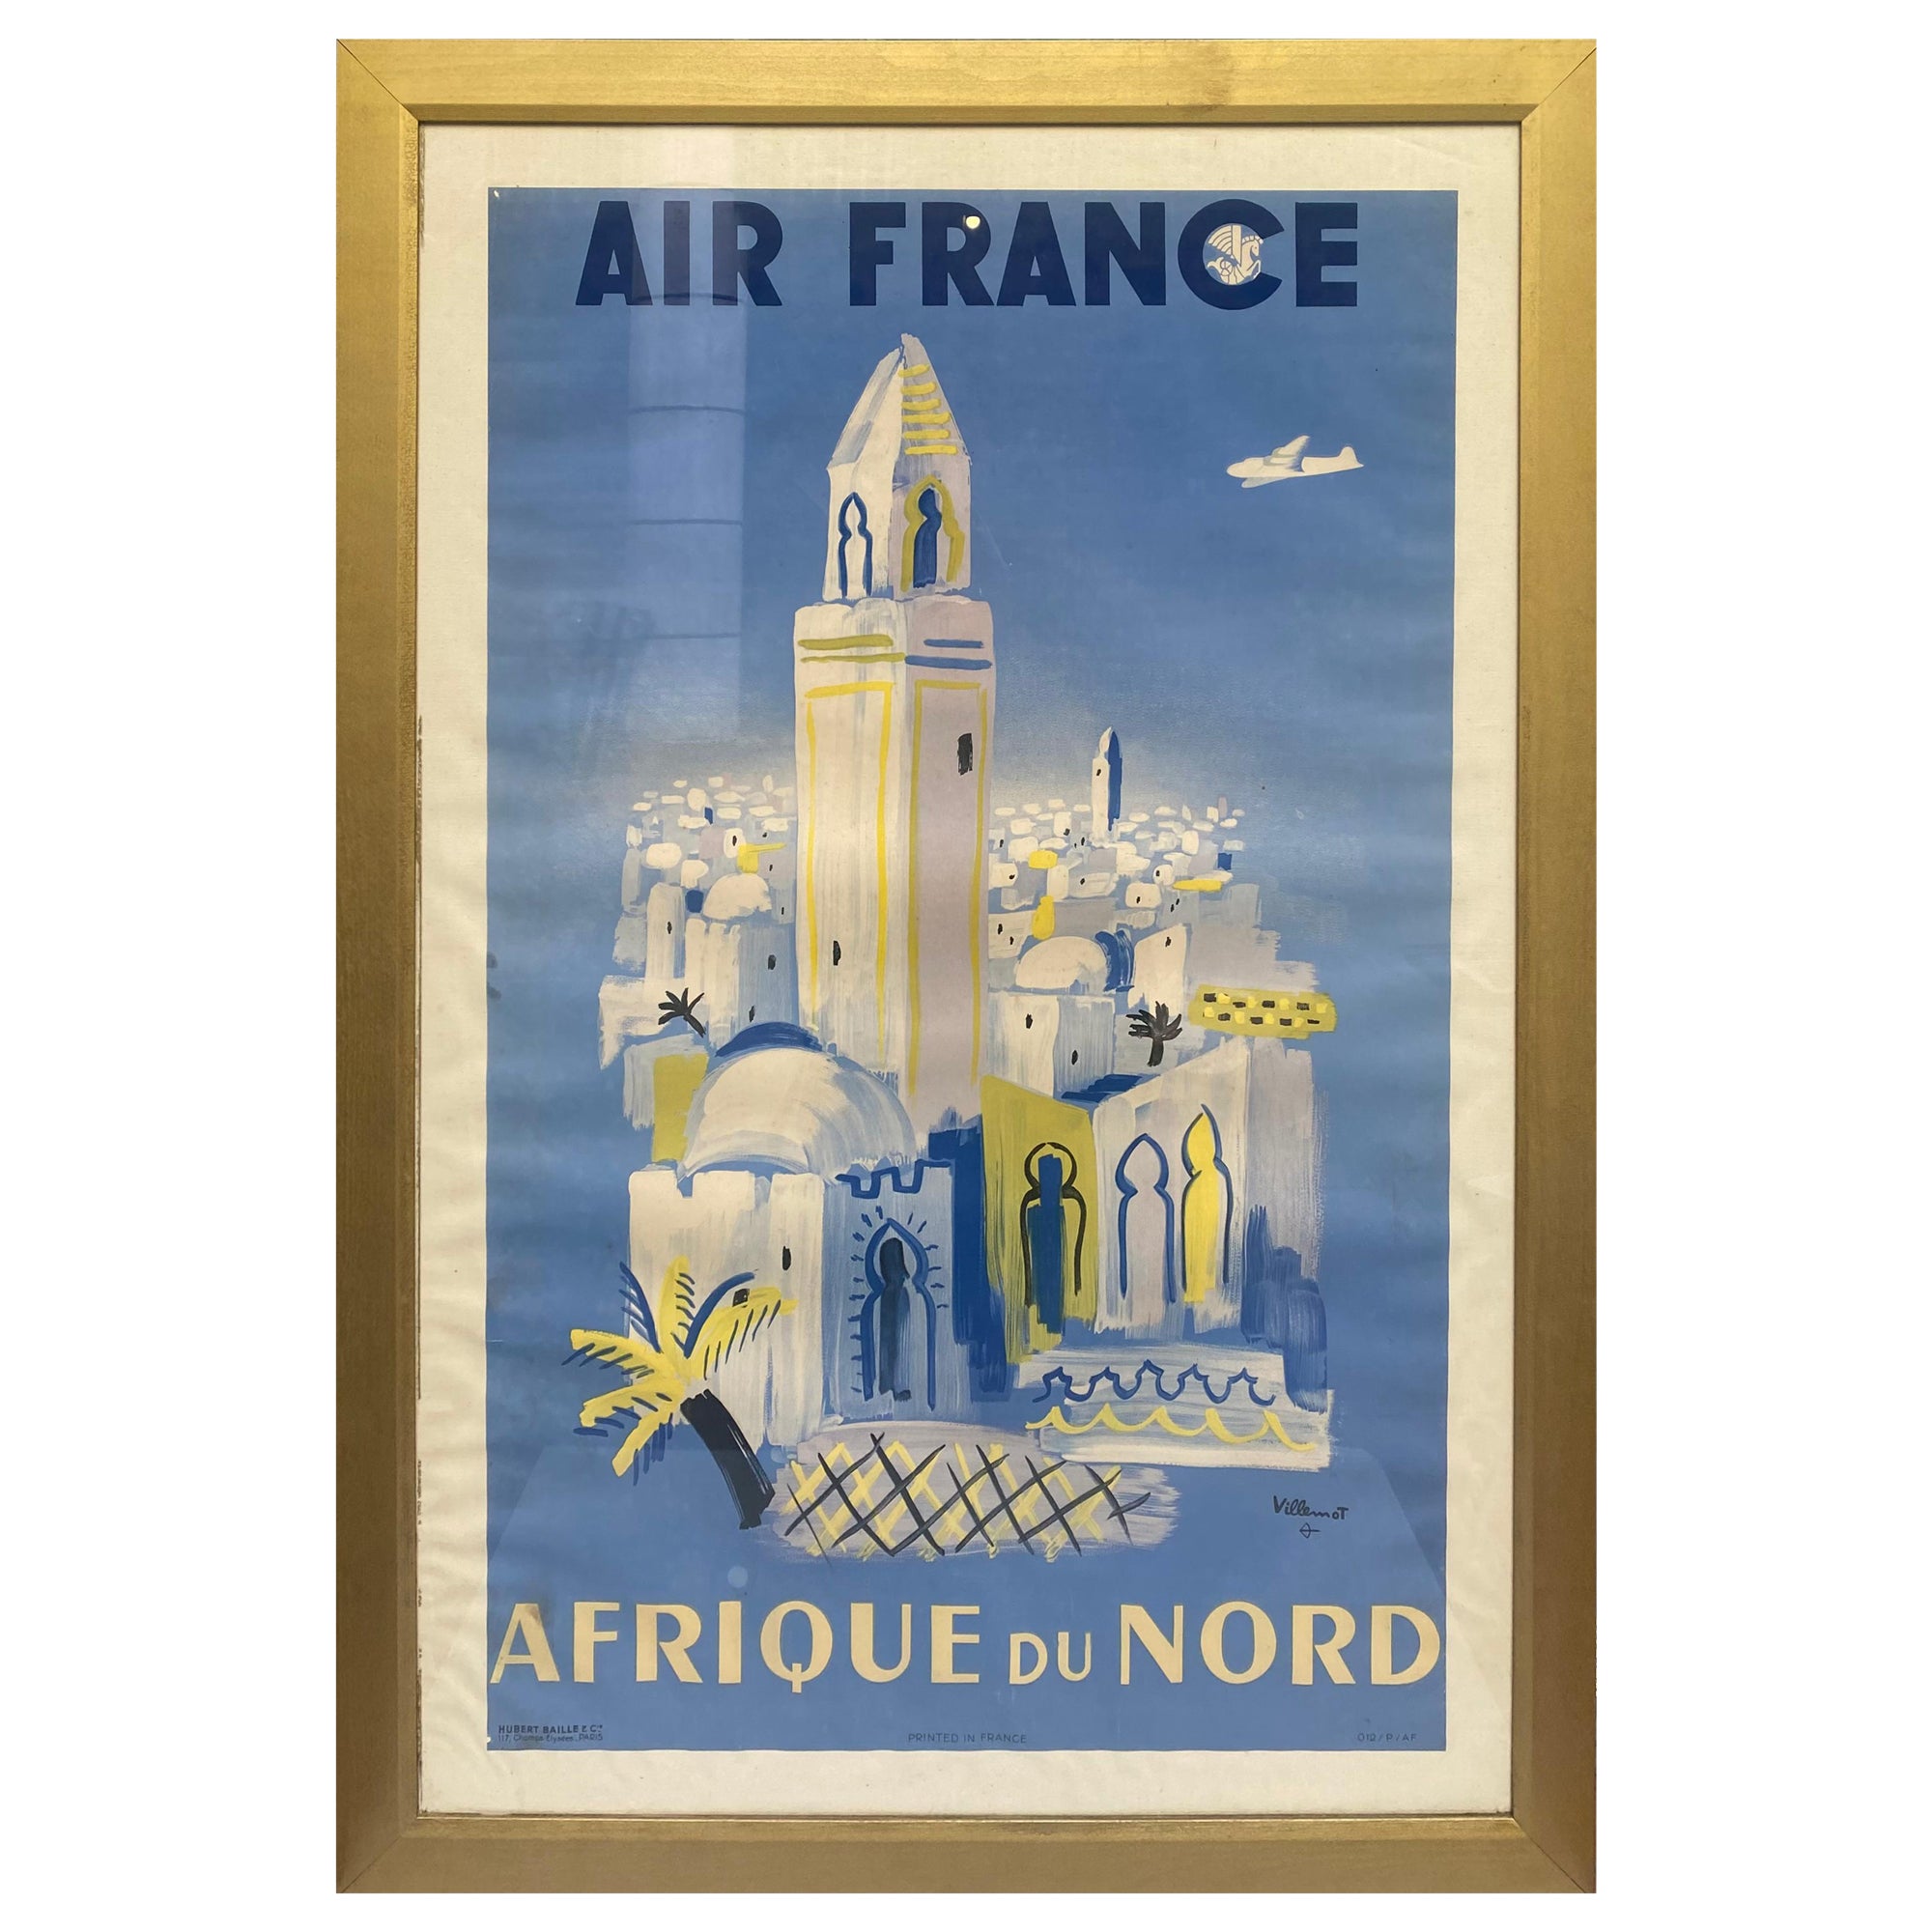 Original Vintage Travel Poster Air France Afrique Du Nord, Bernard Villemot